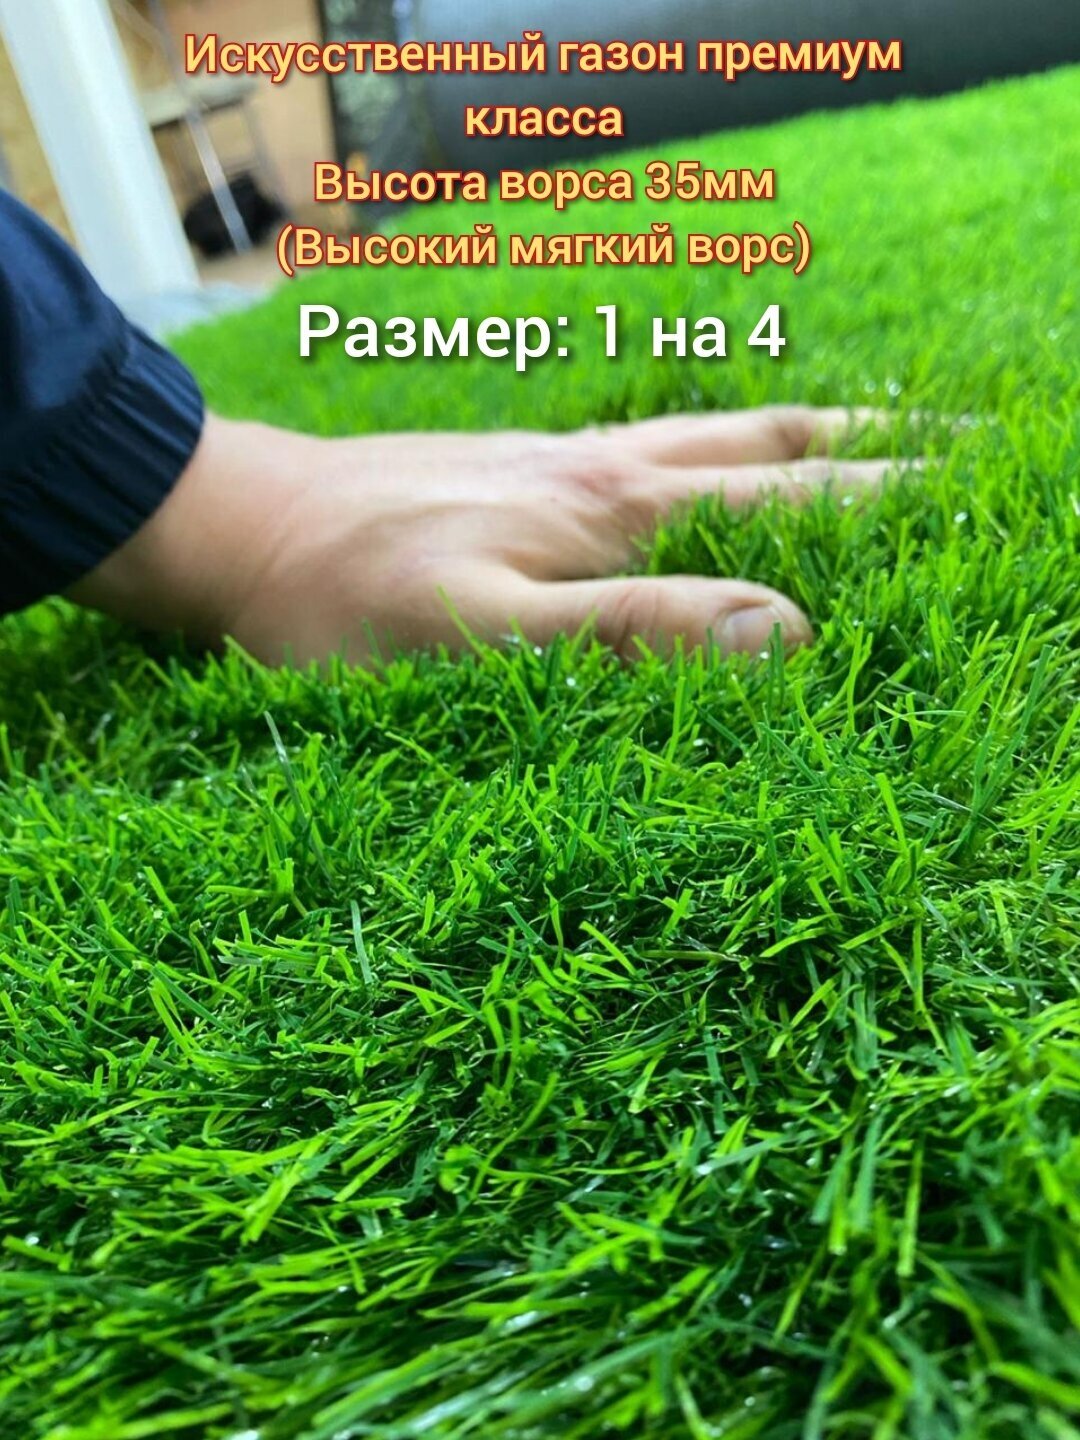 Газон искусственный 1 на 4 (высота ворса 35мм) искусственная трава с высоким мягким ворсом, имитация настоящего газона - фотография № 1